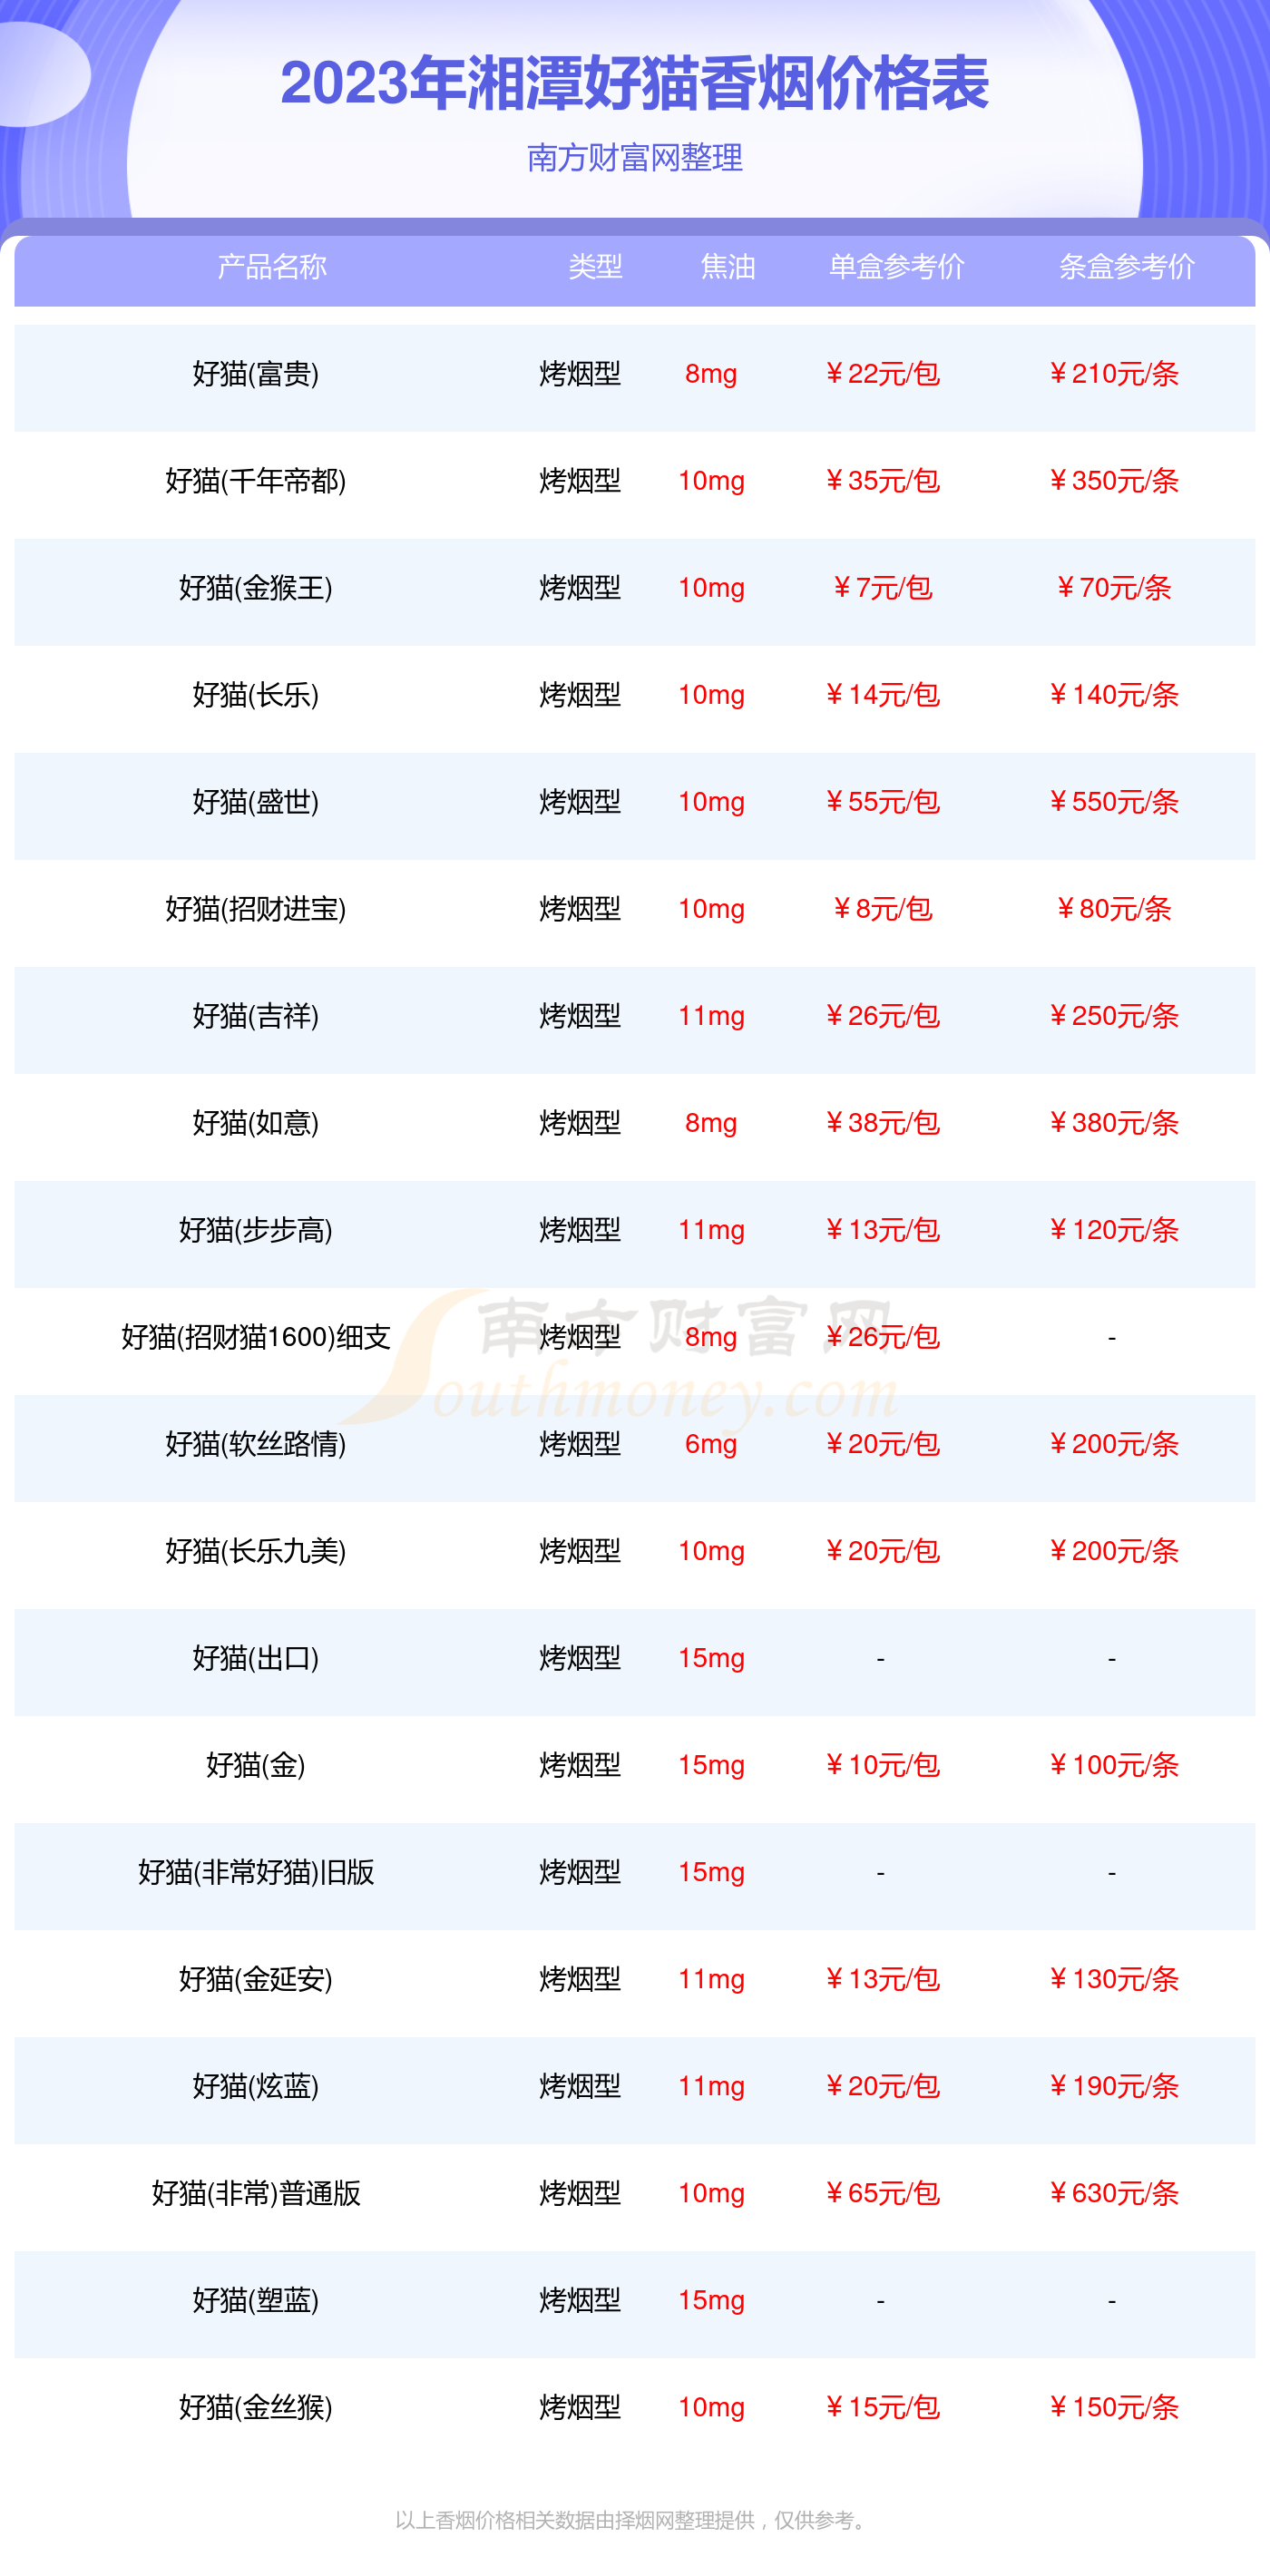 2023年湘潭好猫香烟价格表汇总一览多少钱一盒